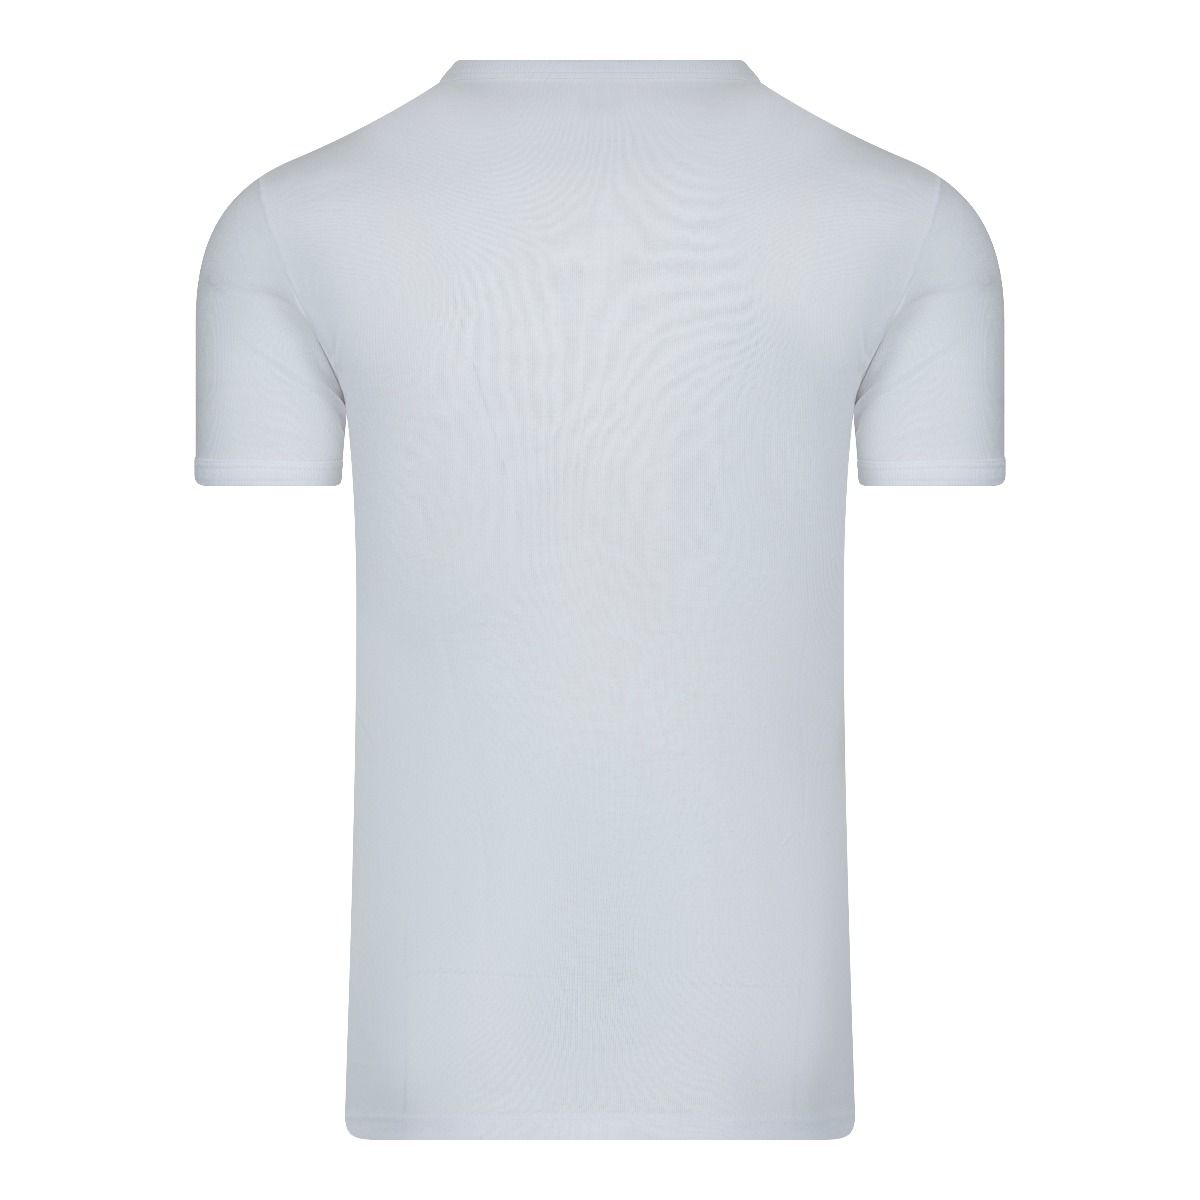 Tijdig Ontwaken Gezichtsveld Beeren T-Shirt wit m3000 basis T-Shirt van honderd procent katoen.